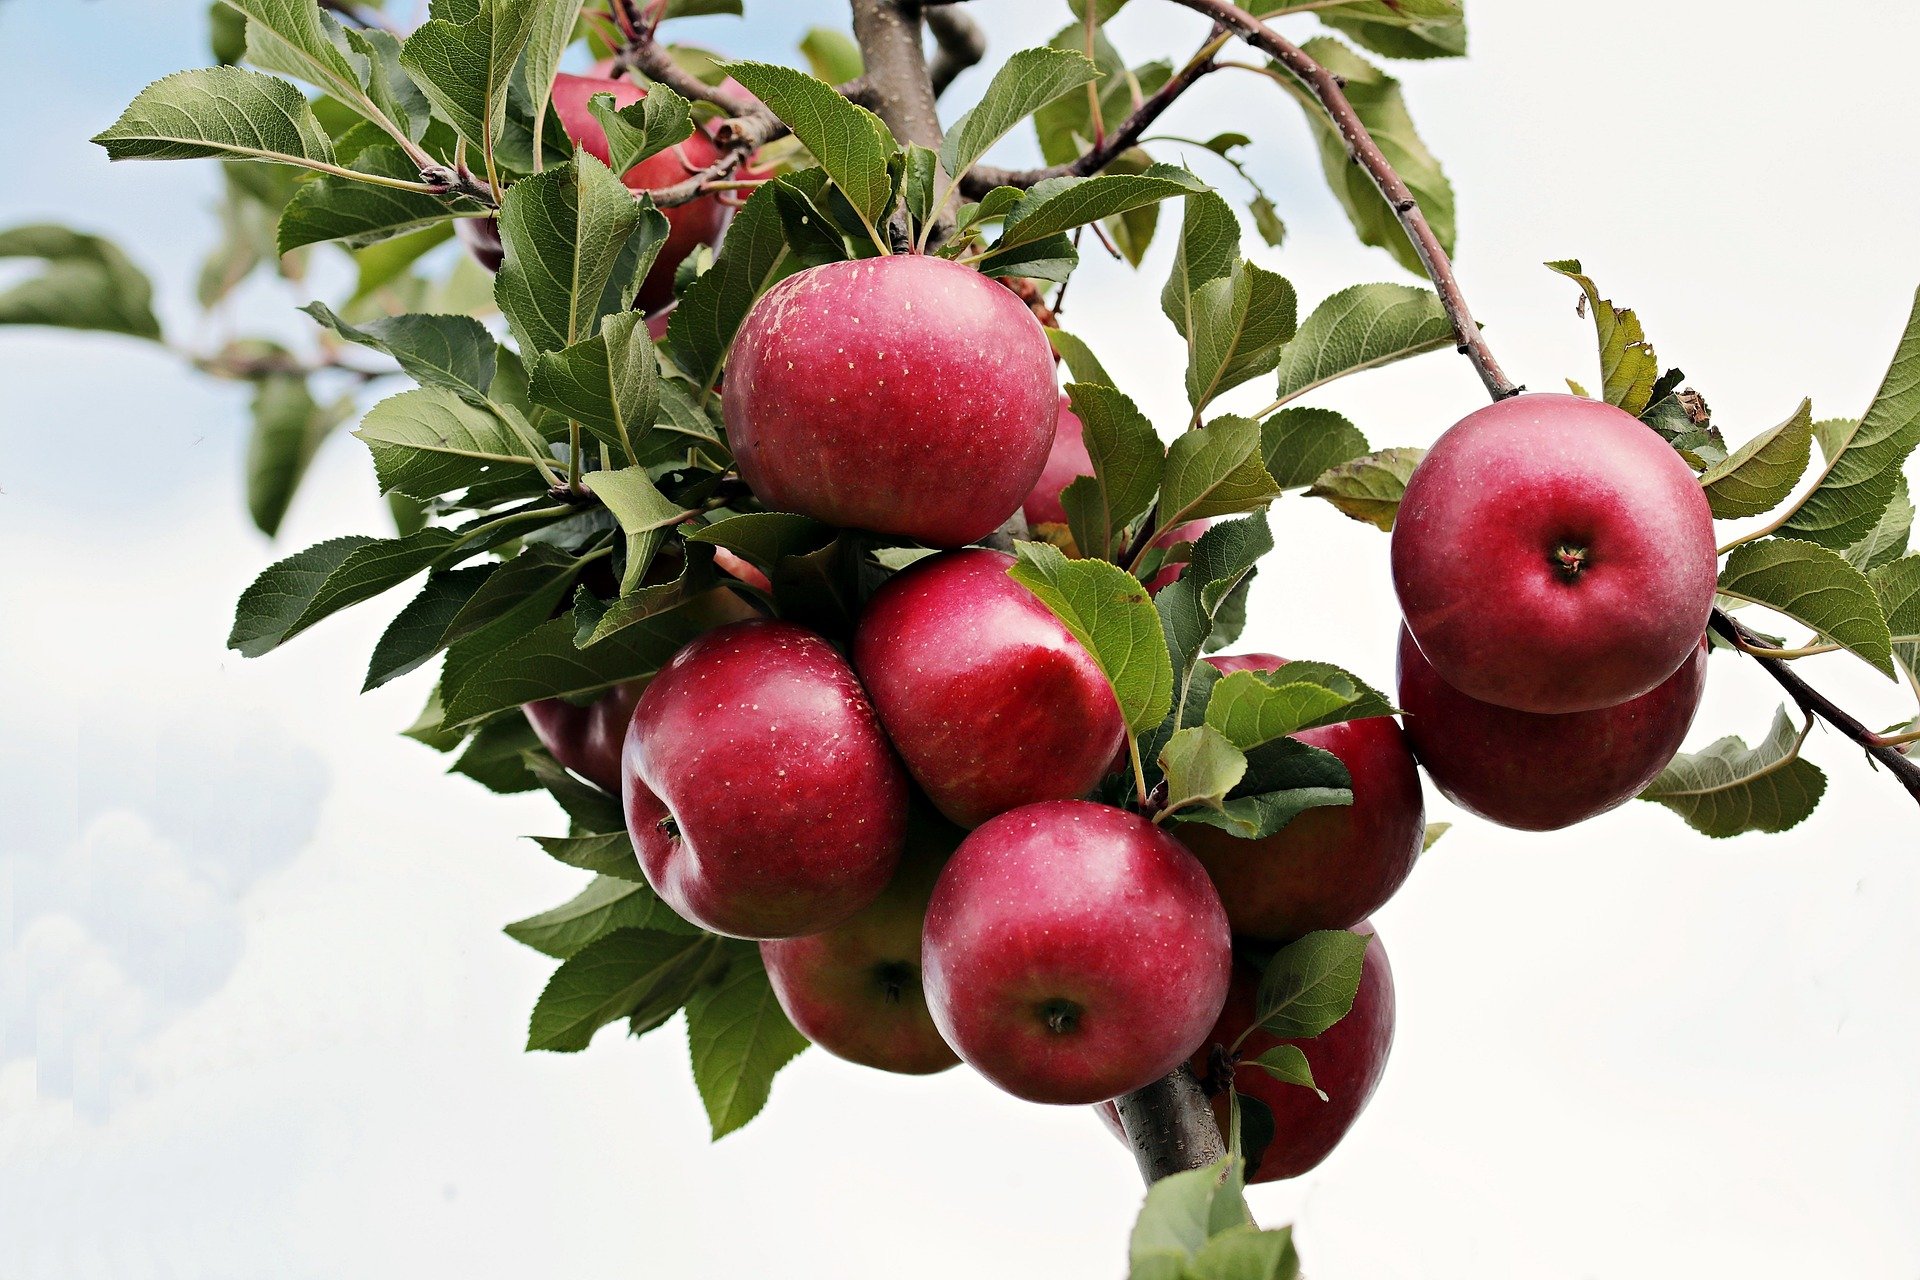 Zweig eines Apfelbaumes an welchem rote Äpfel hängen